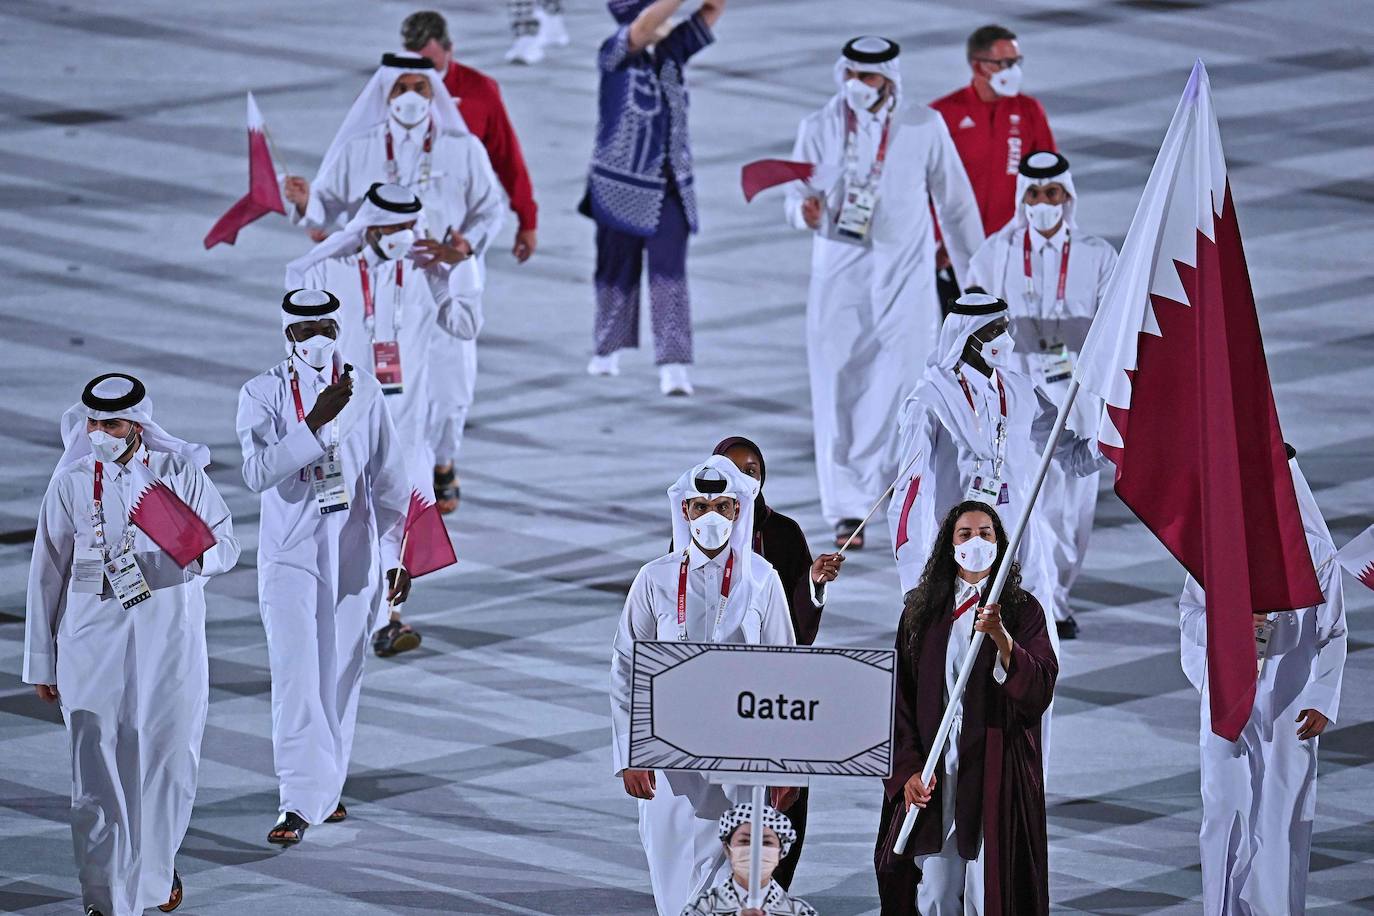 El abanderado de Catar, Tala Abujbara, encabeza la delegación durante la ceremonia de inauguración de los Juegos Olímpicos de Tokio 2020.